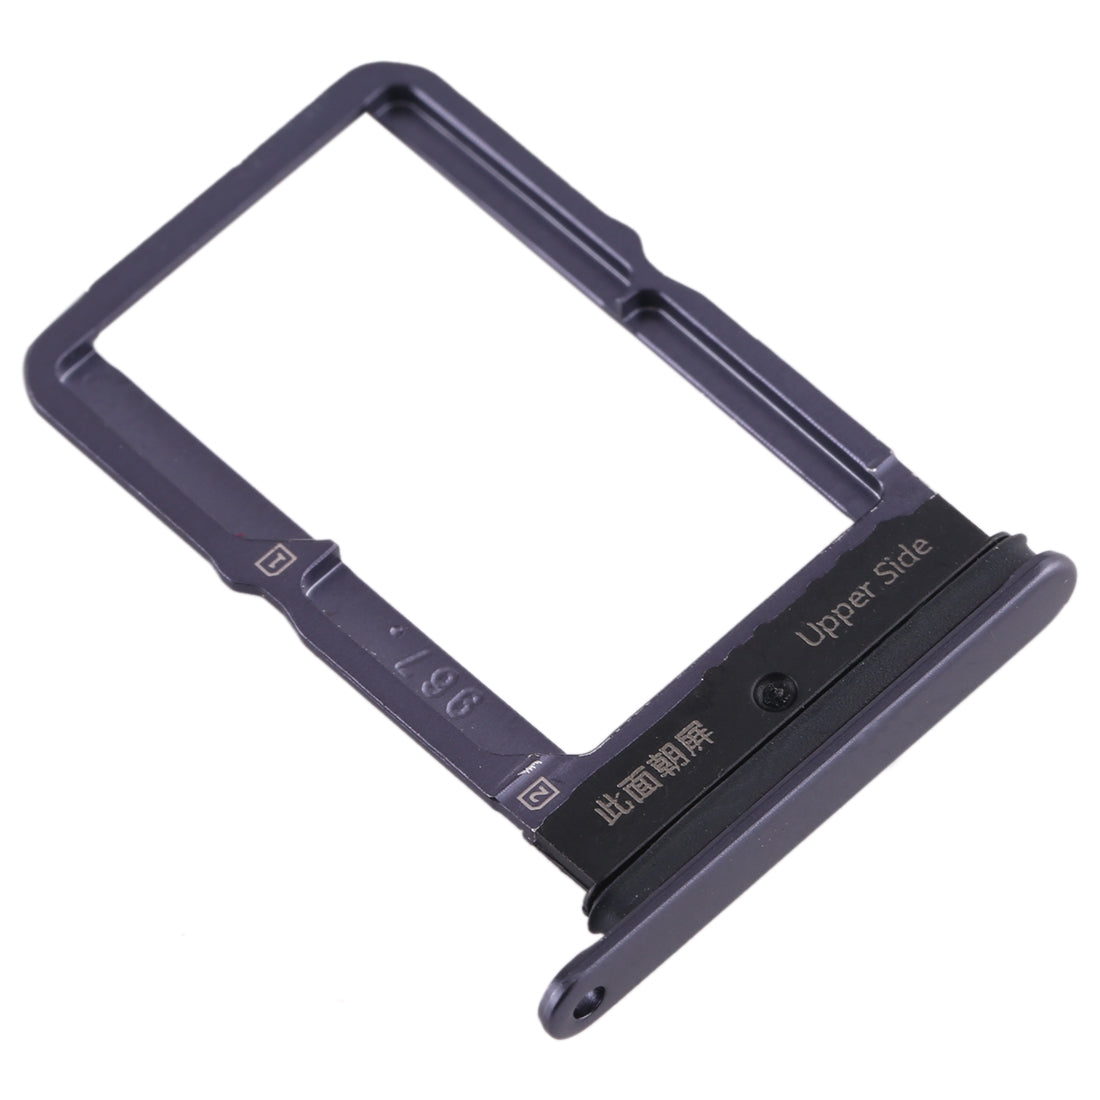 Dual SIM Holder Tray Vivo S5 Black